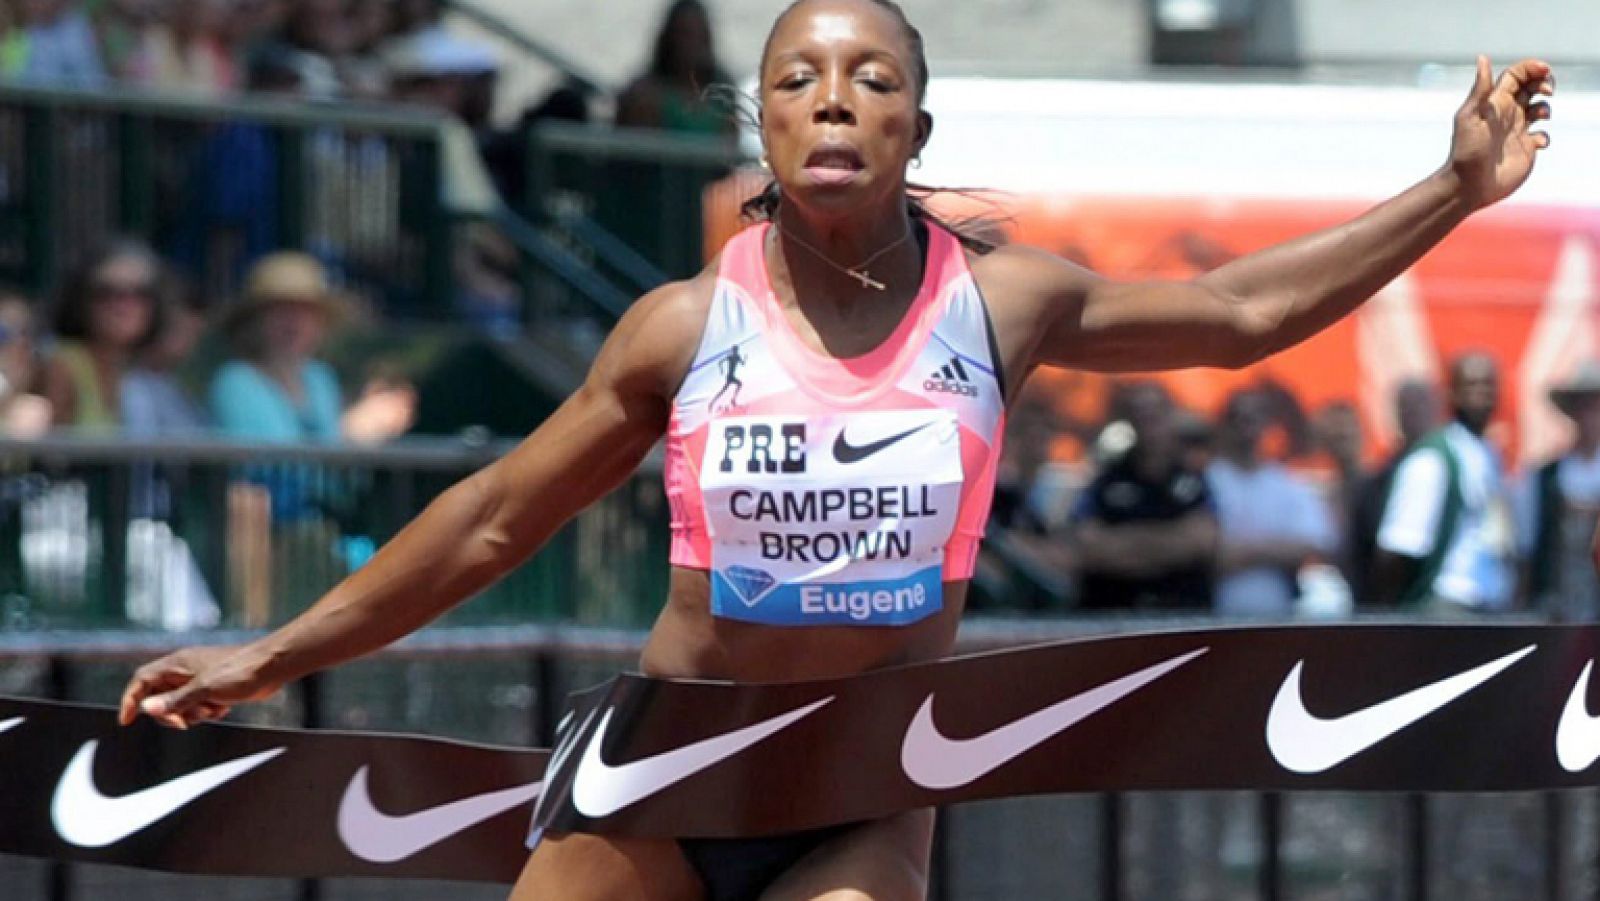 Positivo de la atleta Verónica Campbell- Brown 